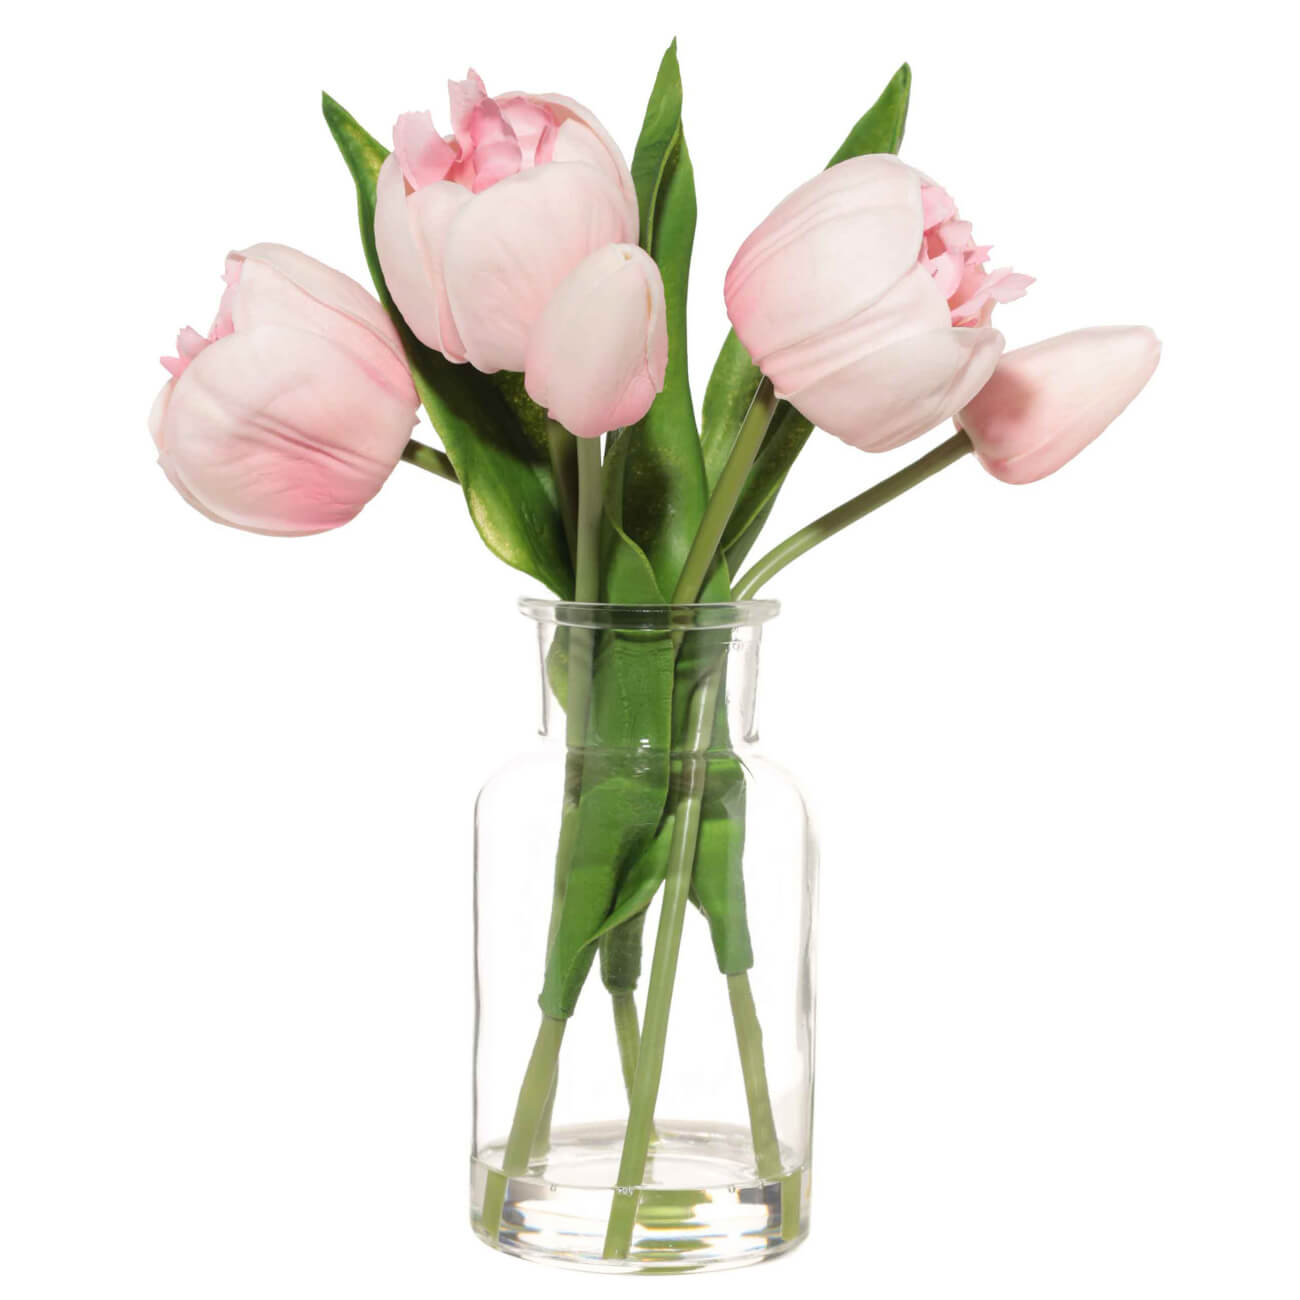 Букет искусственный, 21 см, в вазе, полиуретан/стекло, Розовые тюльпаны, Tulip garden букет песнь океана 35 роз